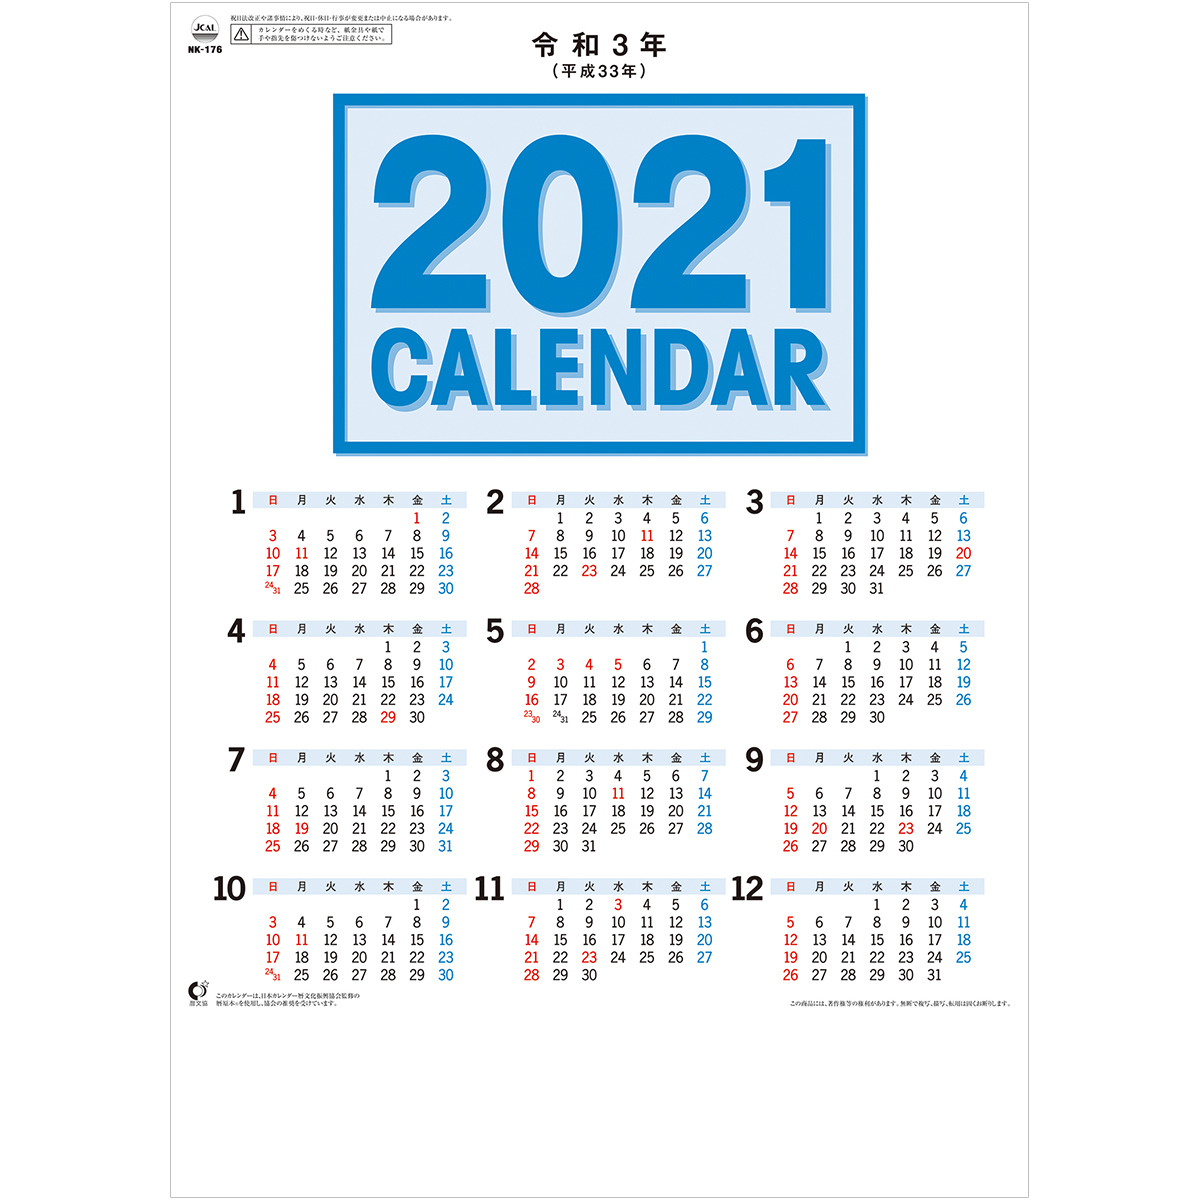 Nk176 小型文字月表 21年カレンダー 文字月表 イラスト無し 名入れカレンダー製作所 累計35 000社突破